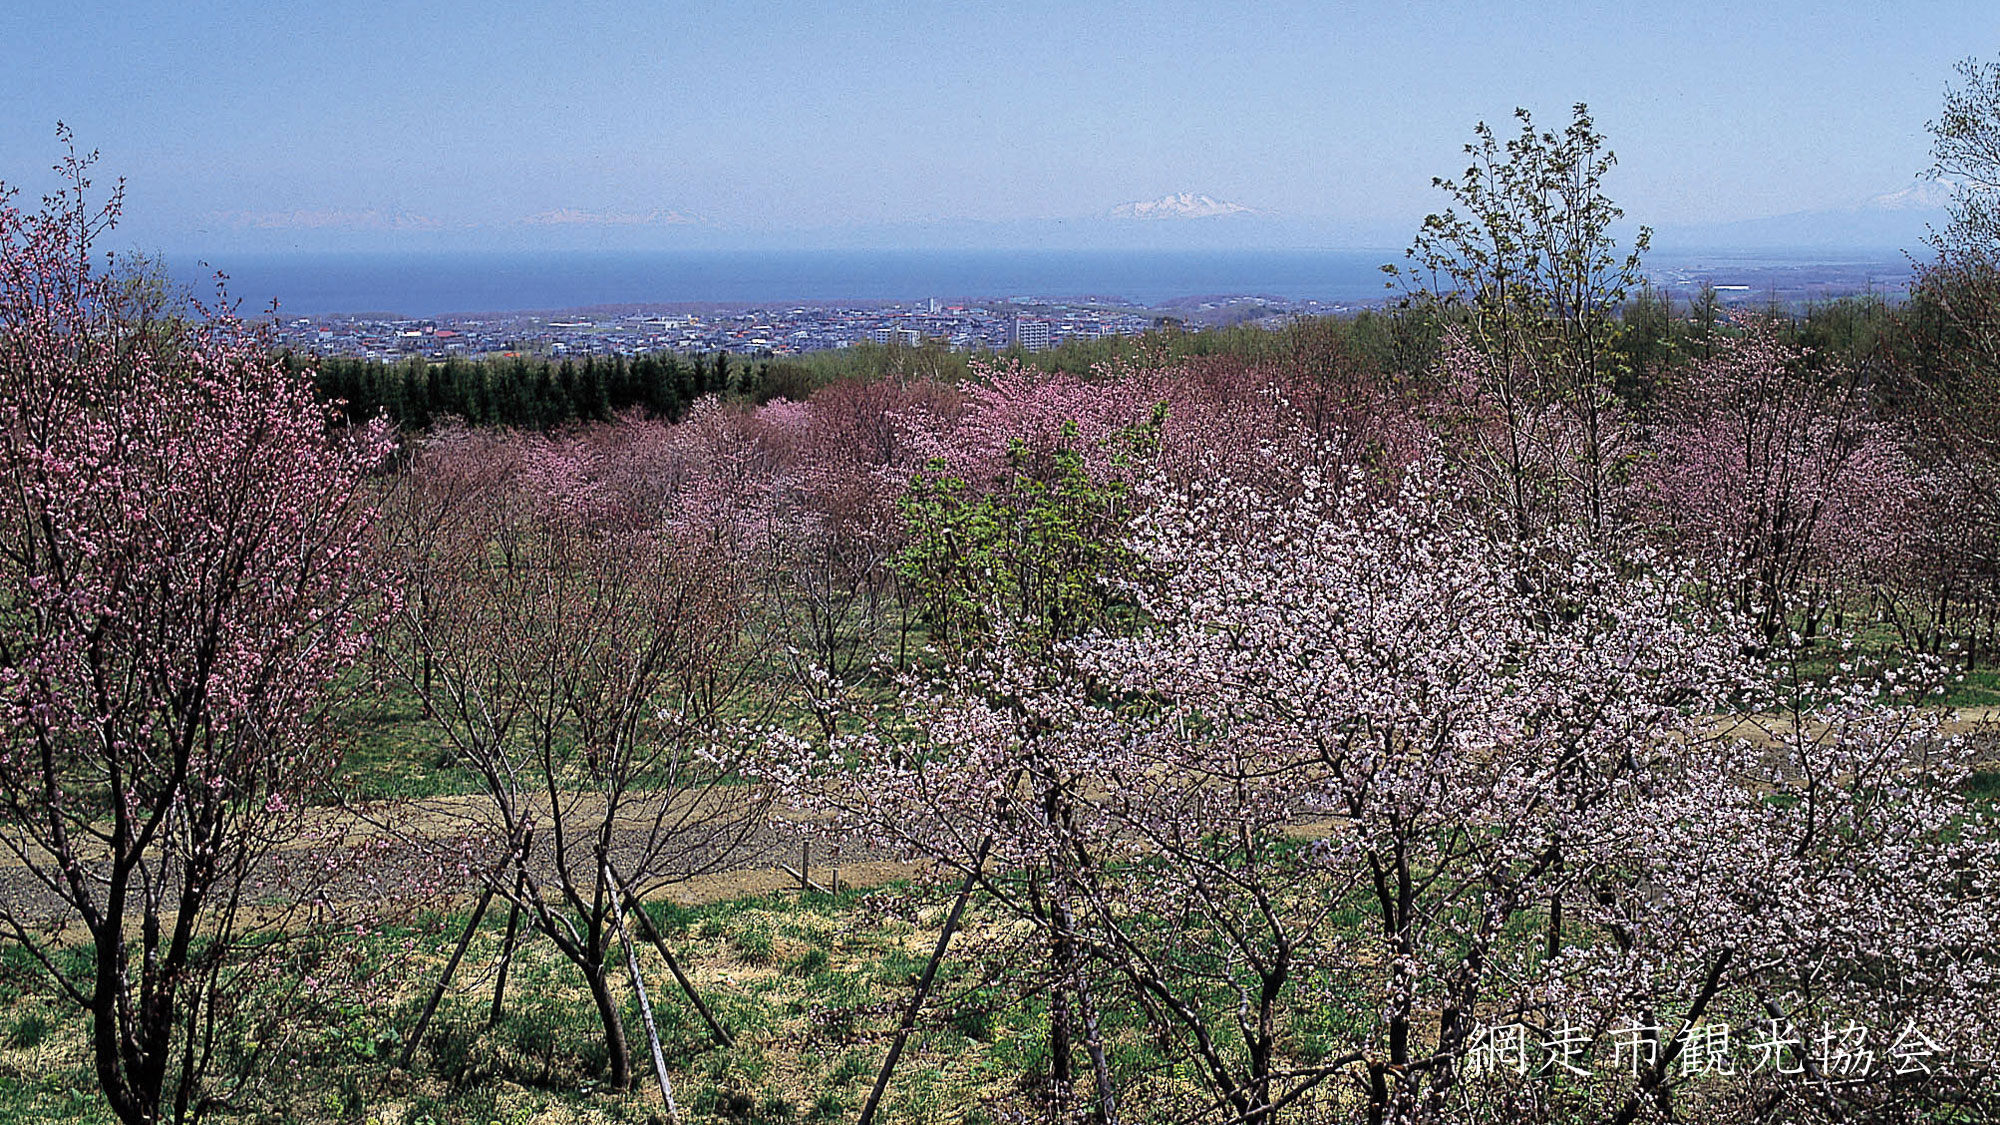 *［天群山・桜公園］当館より車で約10分。オホーツク海と桜のコラボレーション。例年見頃は5月中旬